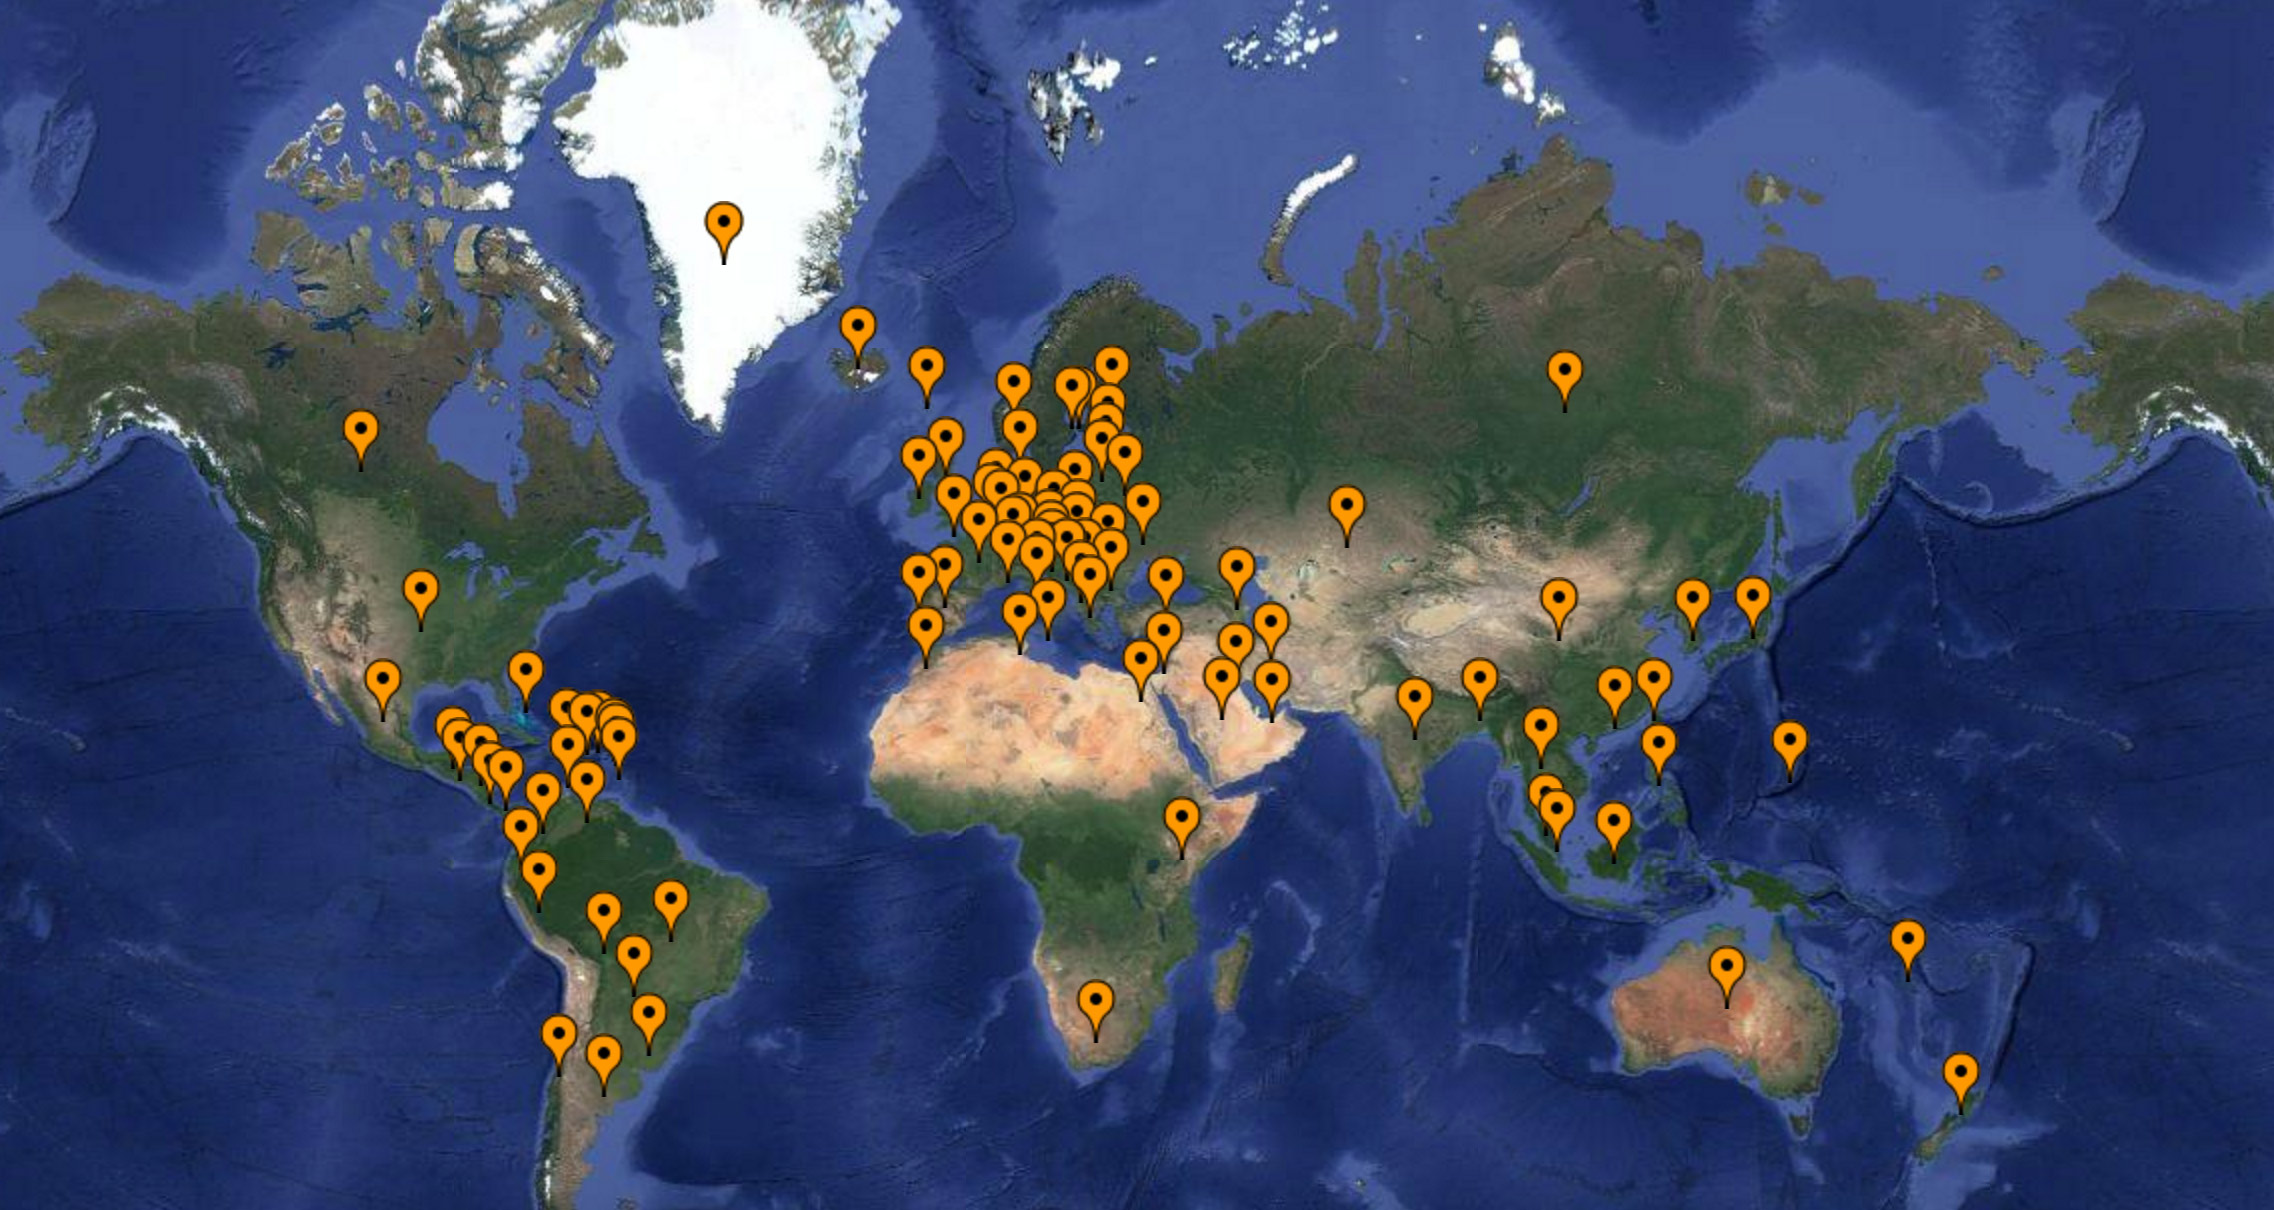 Webcam World Map with Live Cameras - CamHacker.com